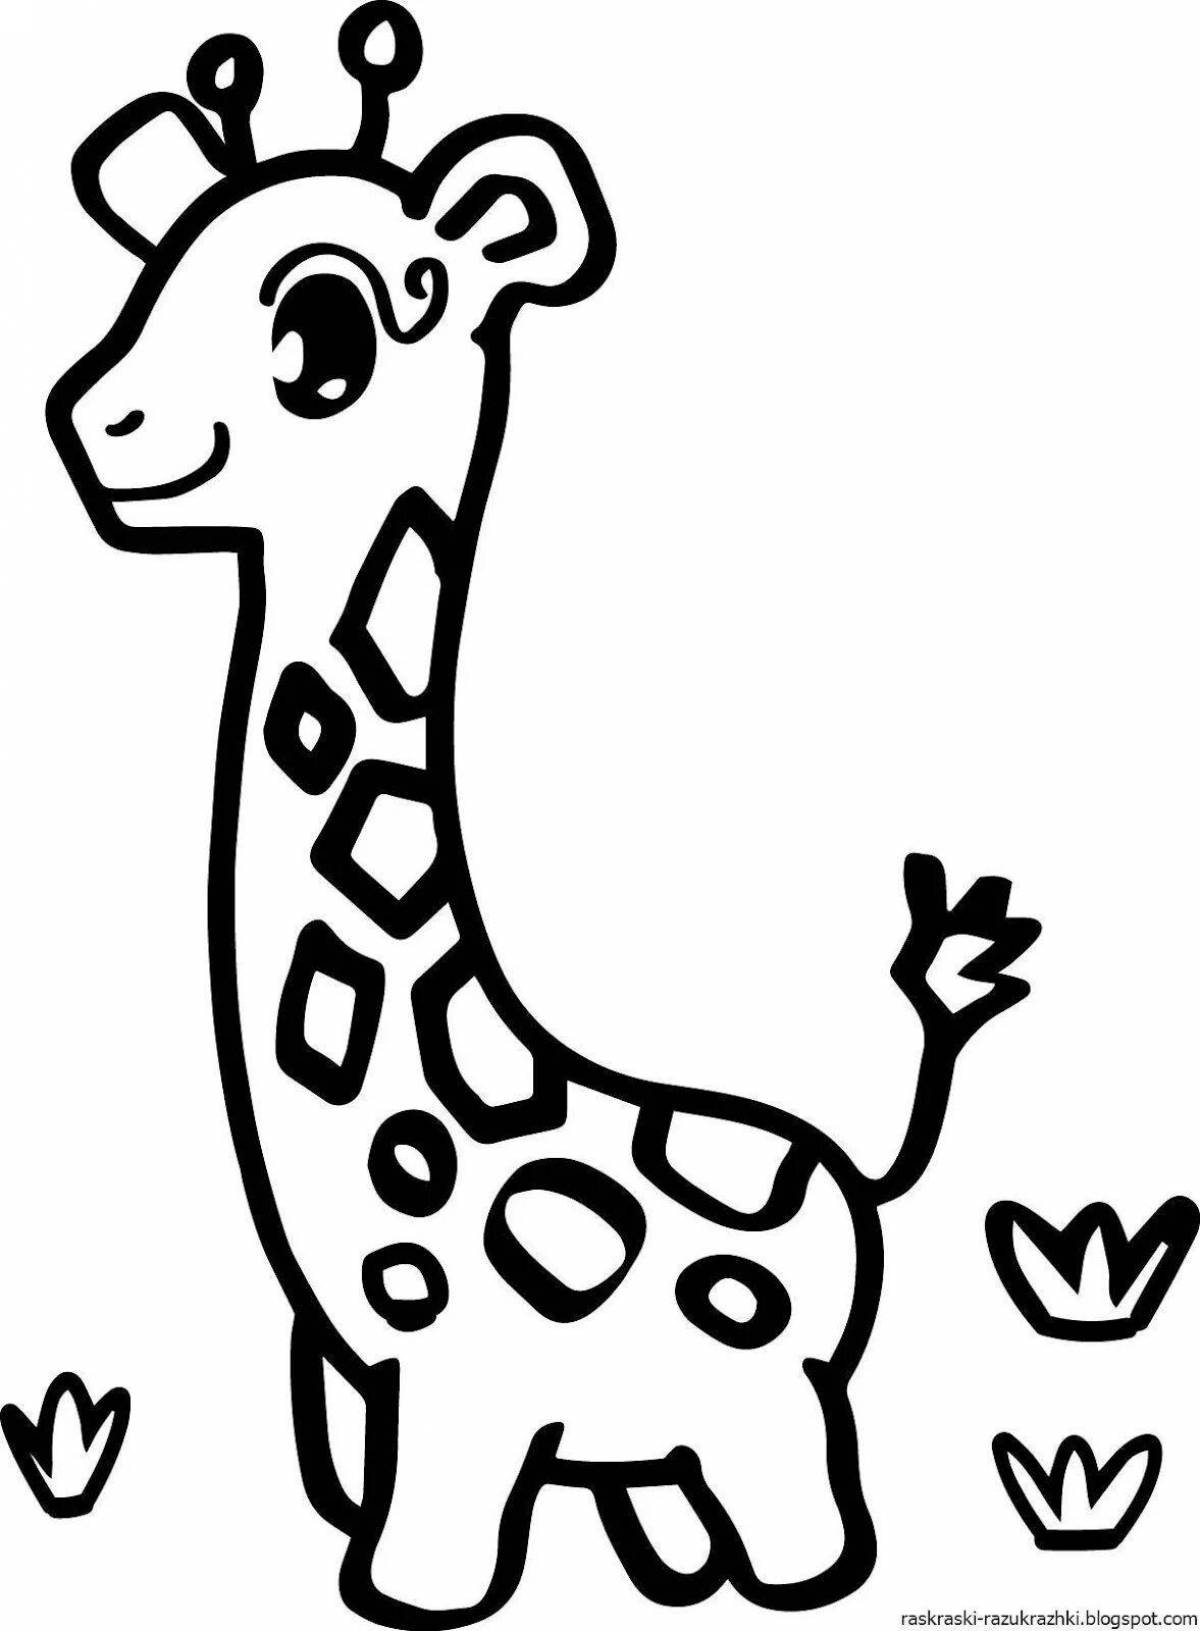 Fabulous giraffe drawing for kids